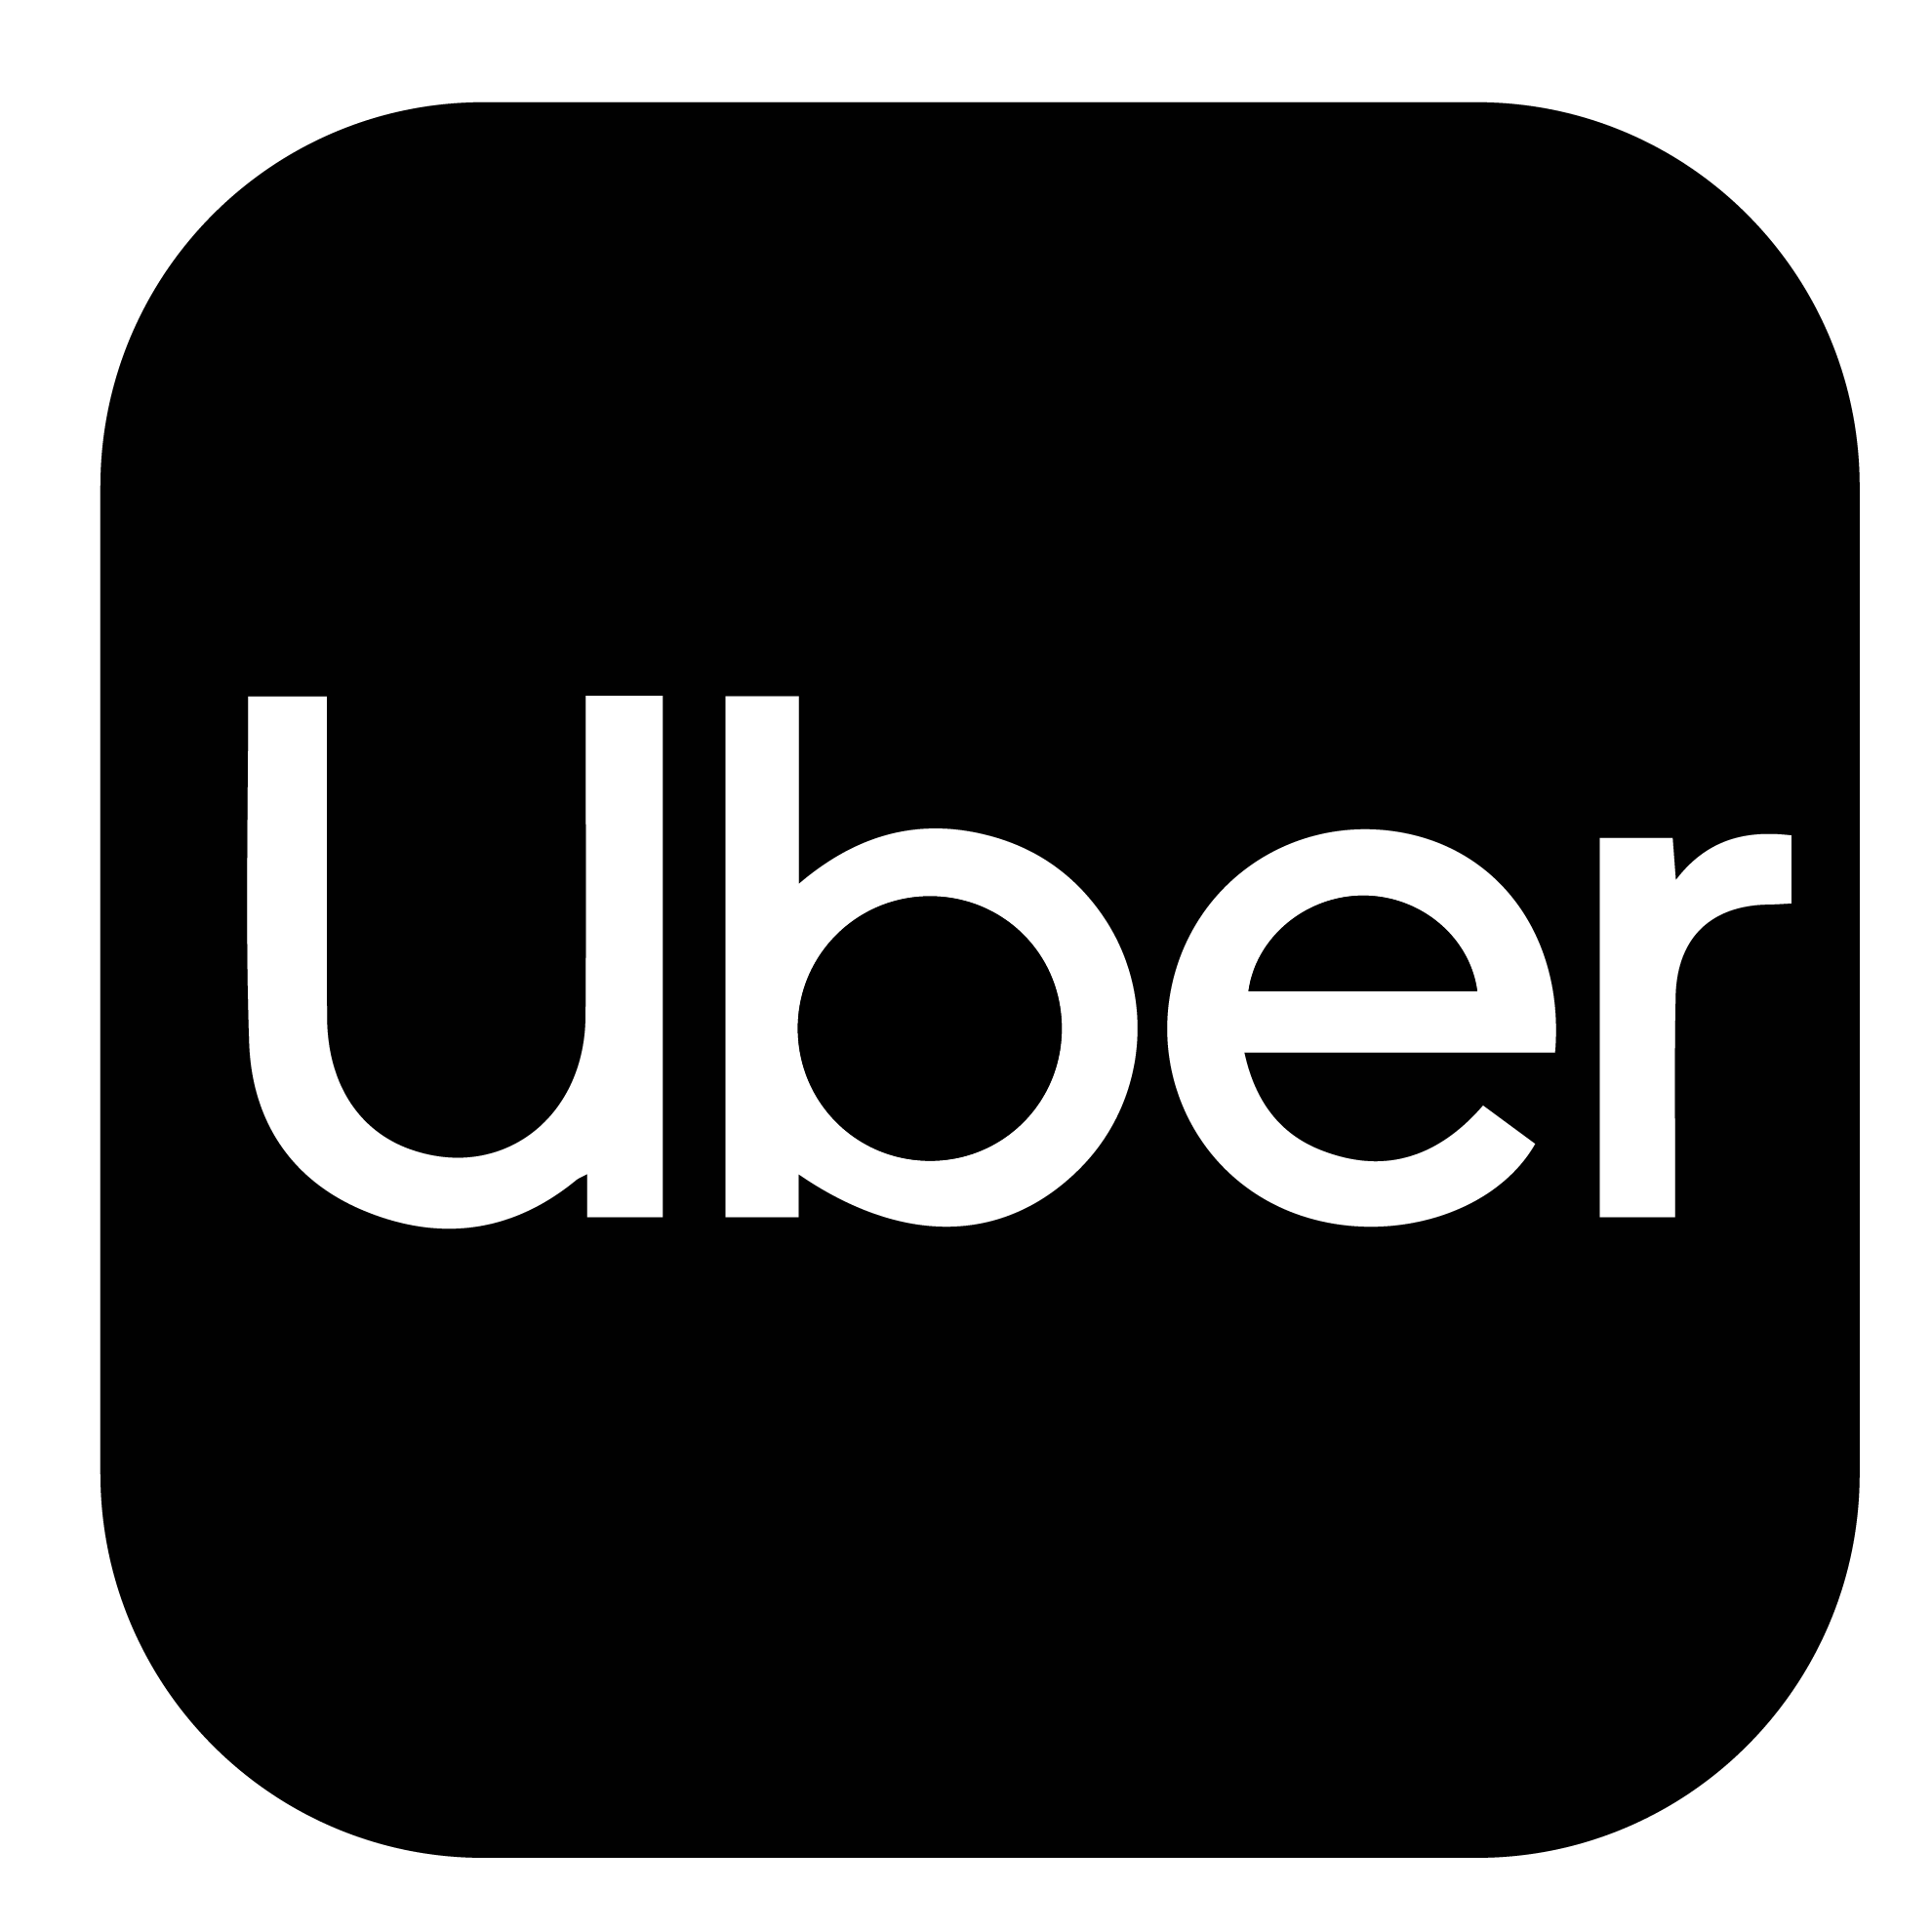 Logotipo Uber incluido al Moverte a un Prepago Movistar